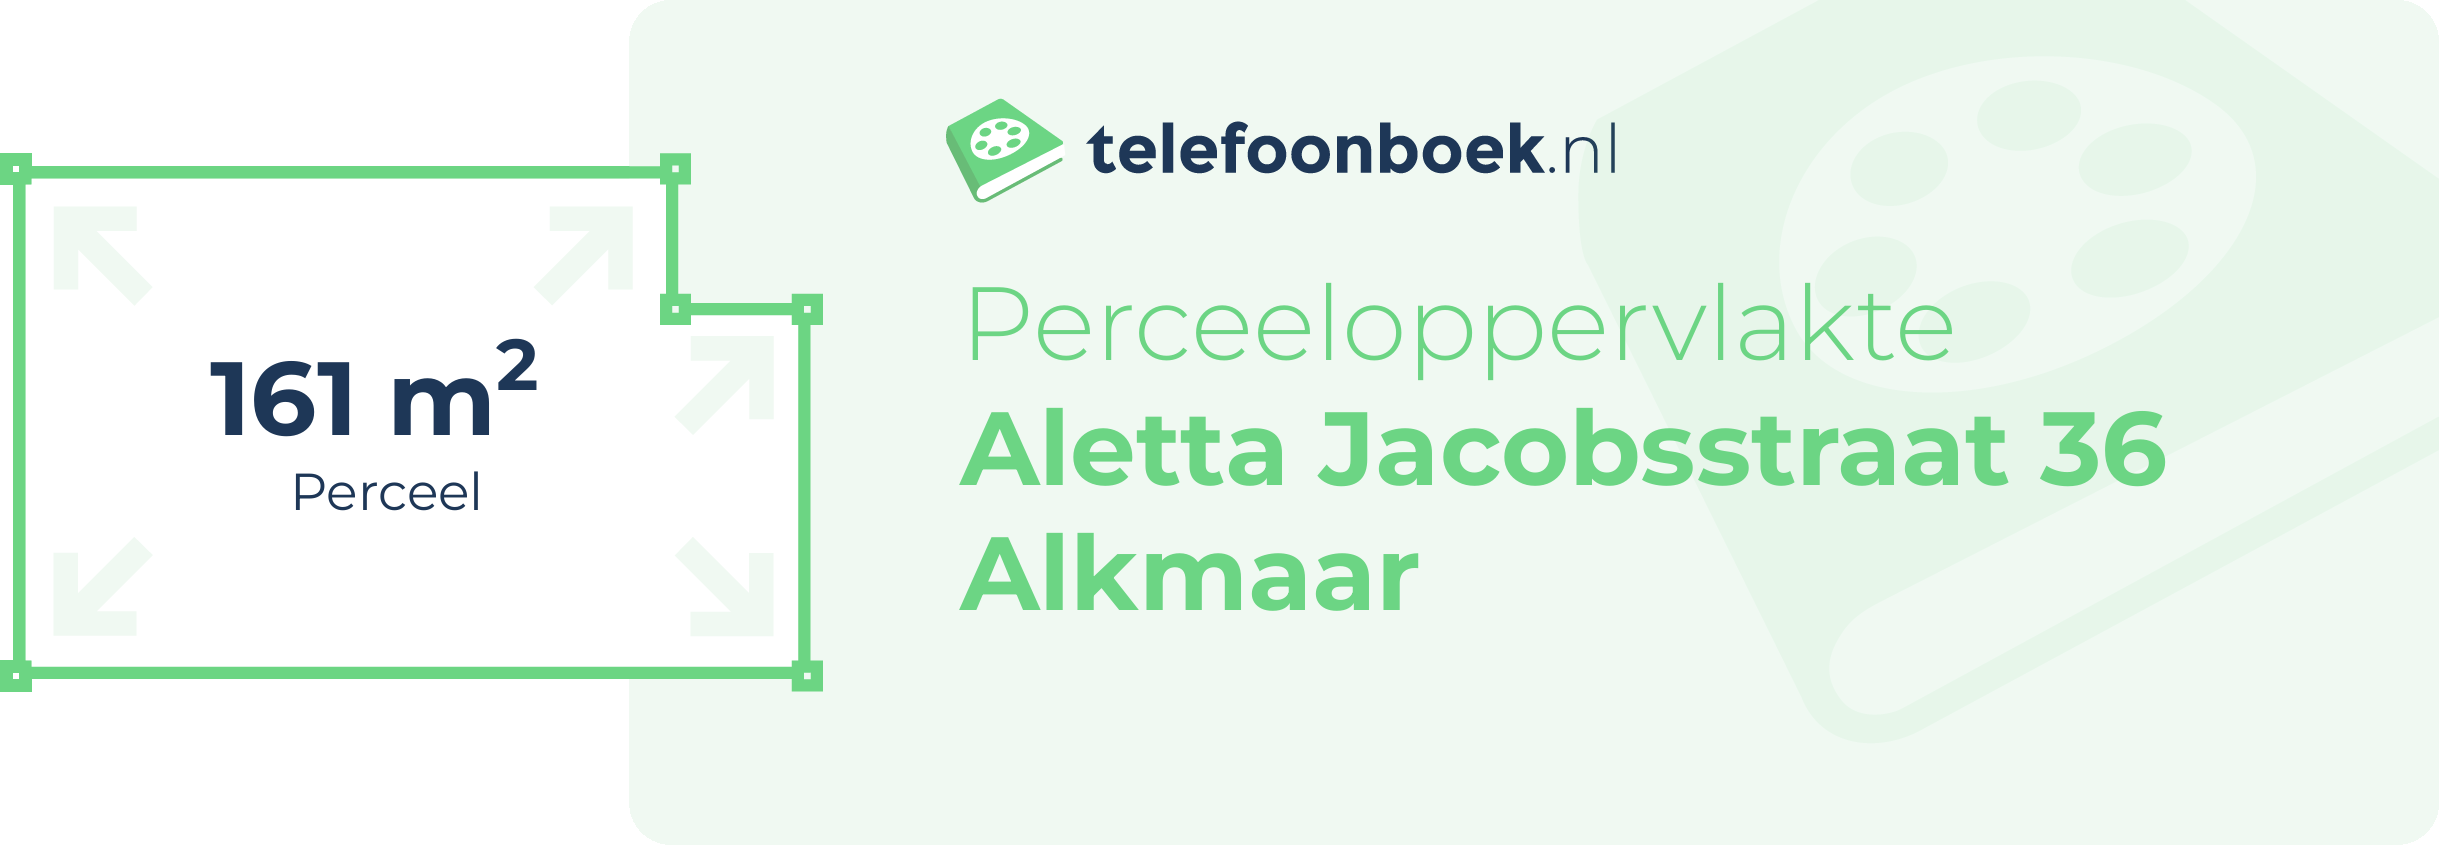 Perceeloppervlakte Aletta Jacobsstraat 36 Alkmaar